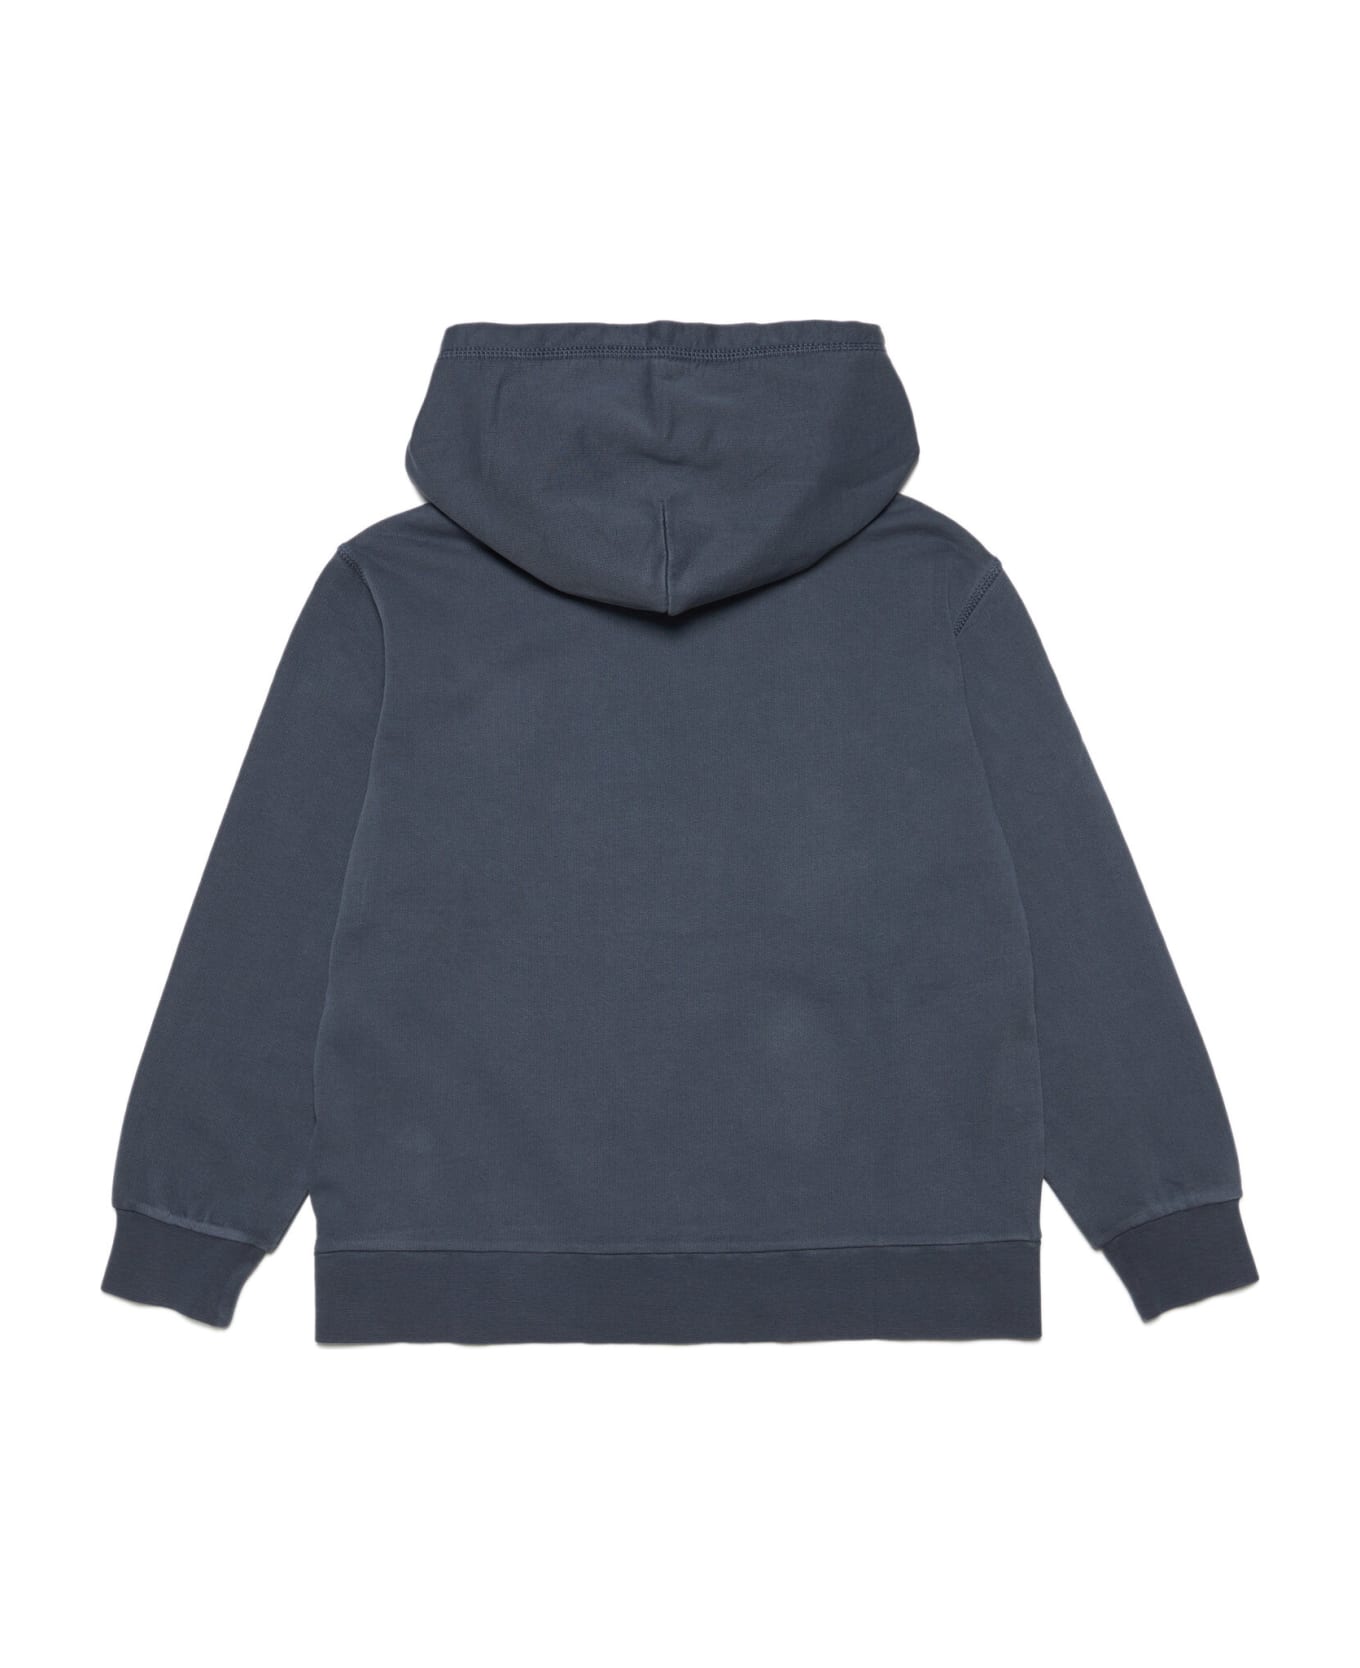 N.21 N21s165u Over Sweat-shirt N°21 Grey Vintage-effect Hooded Sweatshirt With Textured Logo - Dark grey